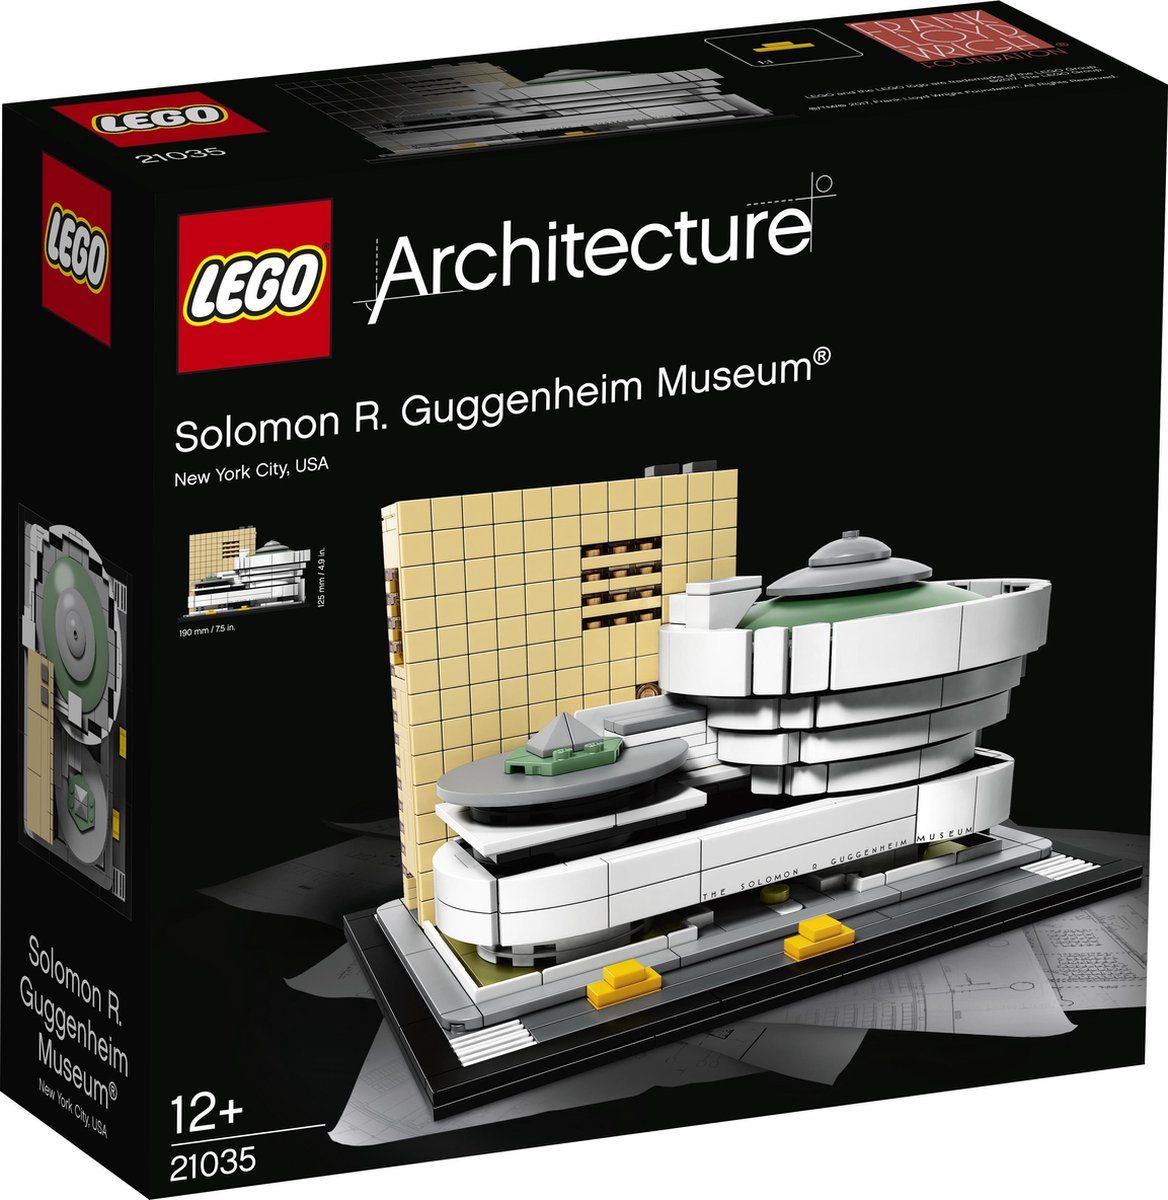 LEGO Architecture Solomon R. Guggenheim museum 21035